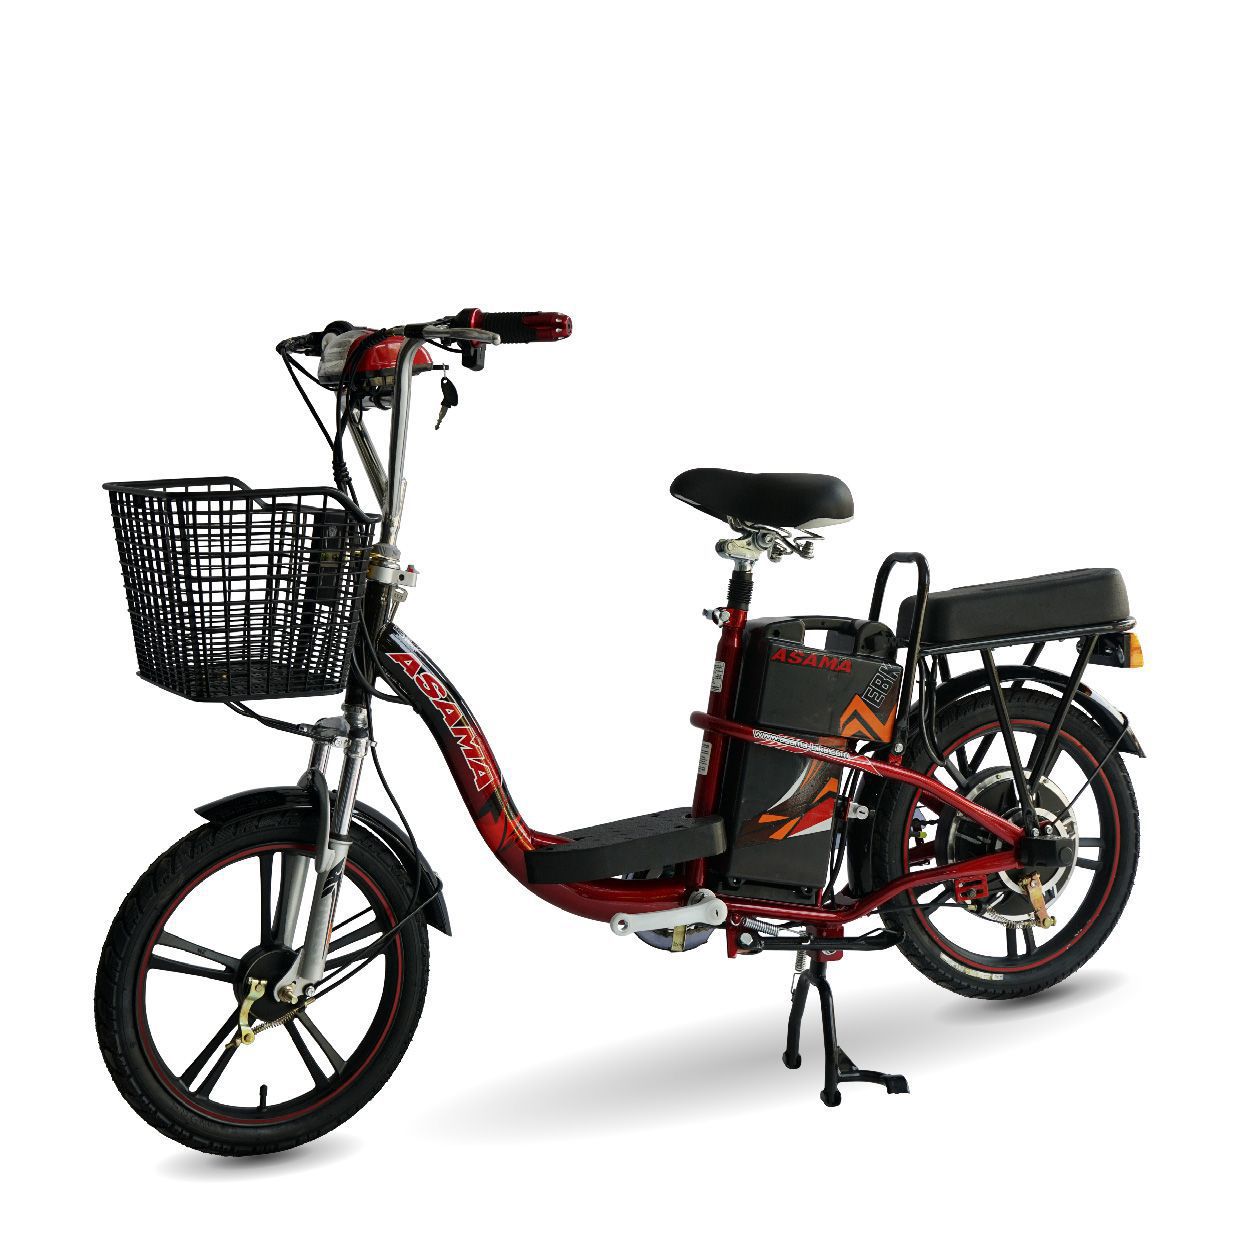 Xe đạp điện asama  Phụ tùngphụ kiện xe đạp Queen Bike  Facebook